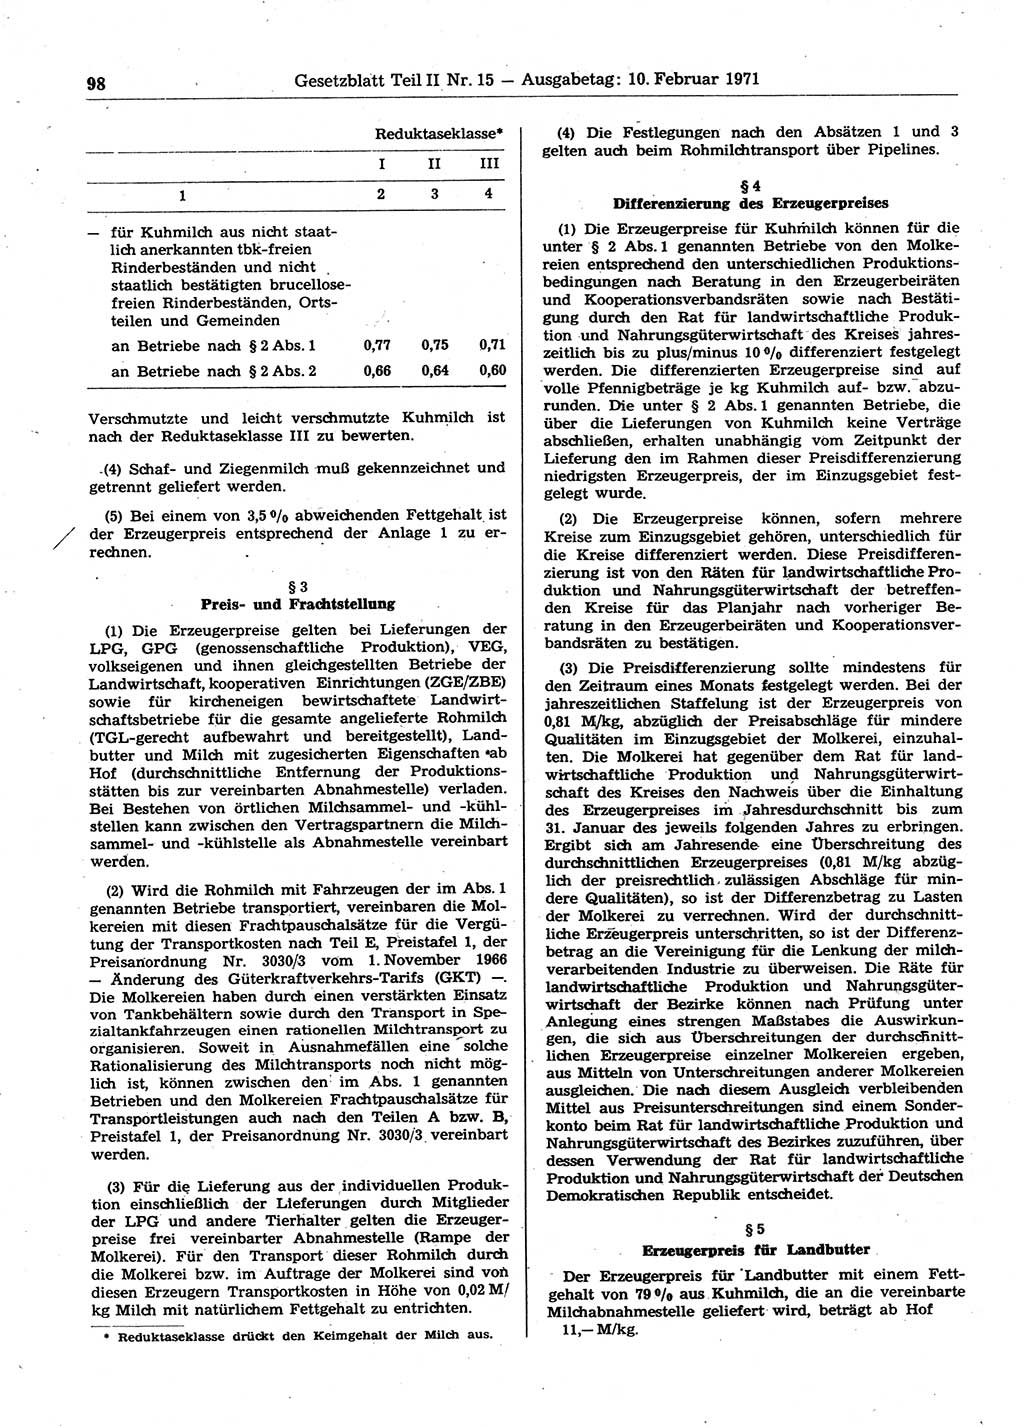 Gesetzblatt (GBl.) der Deutschen Demokratischen Republik (DDR) Teil ⅠⅠ 1971, Seite 98 (GBl. DDR ⅠⅠ 1971, S. 98)